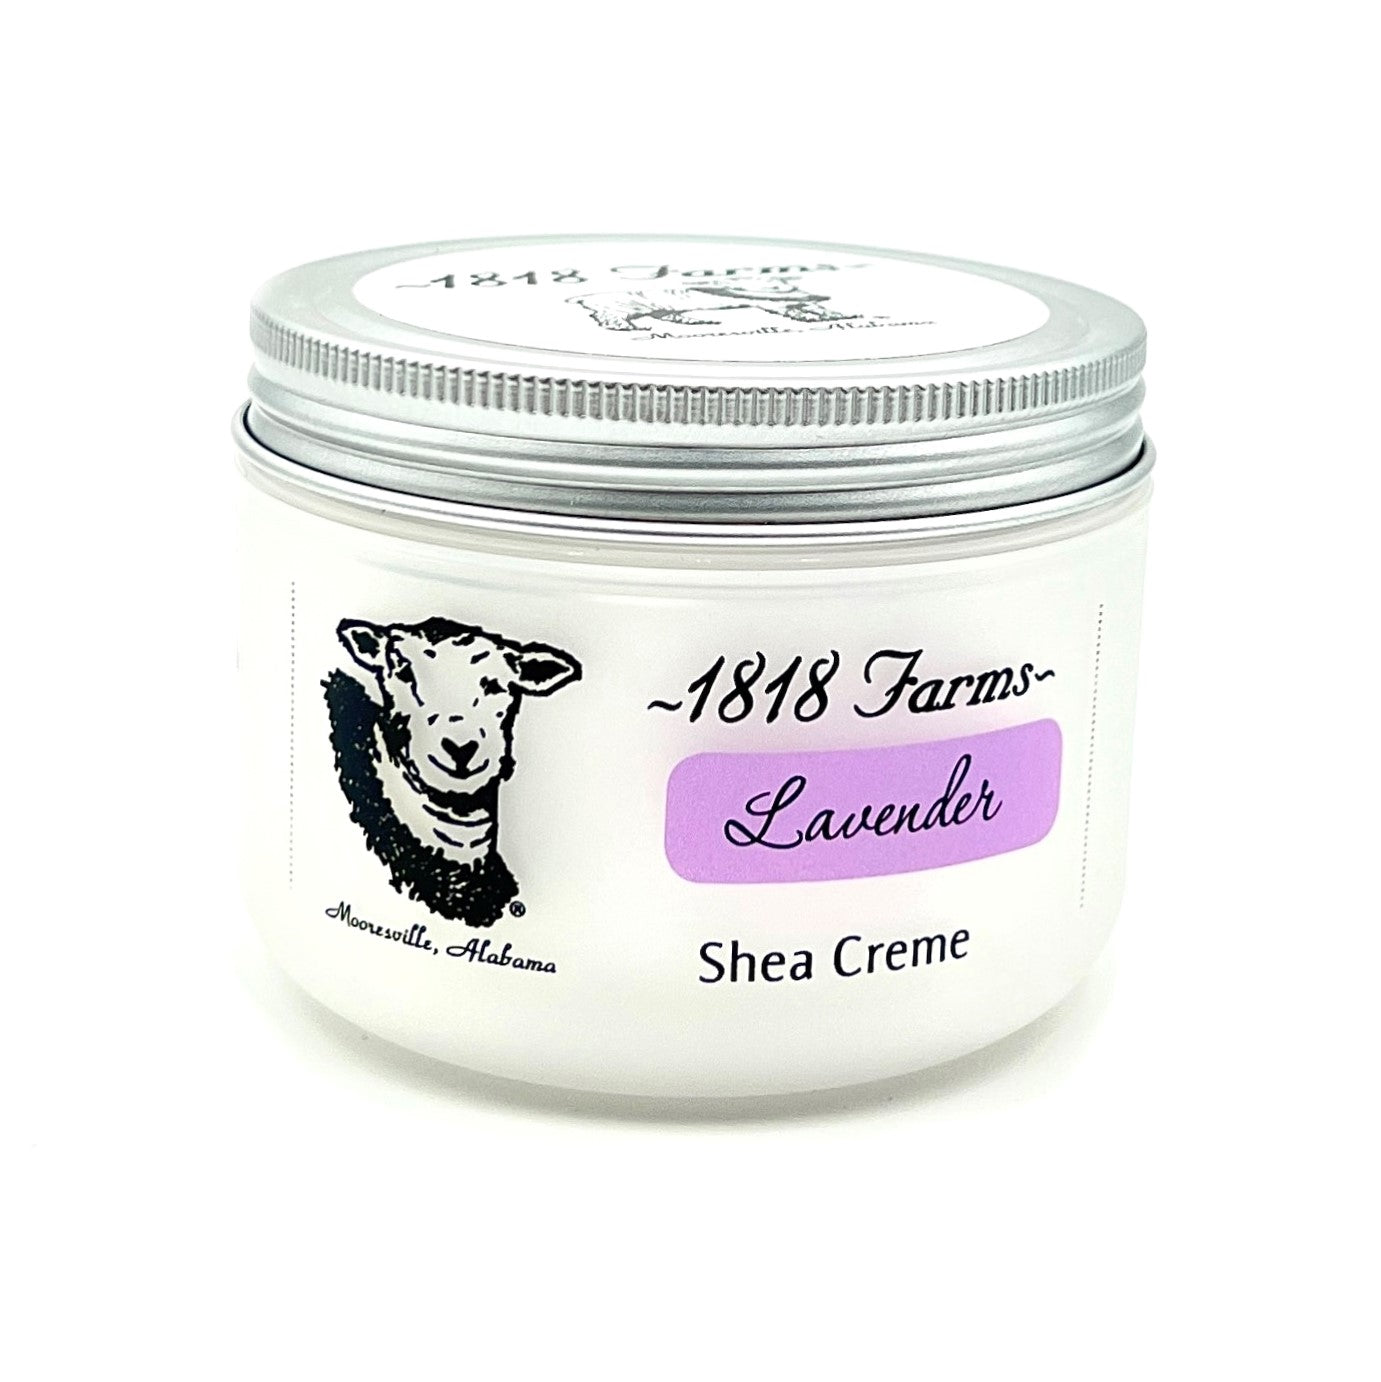 Shea Creme (8 fl oz) | Lavender Shea Creme 1818 Farms   